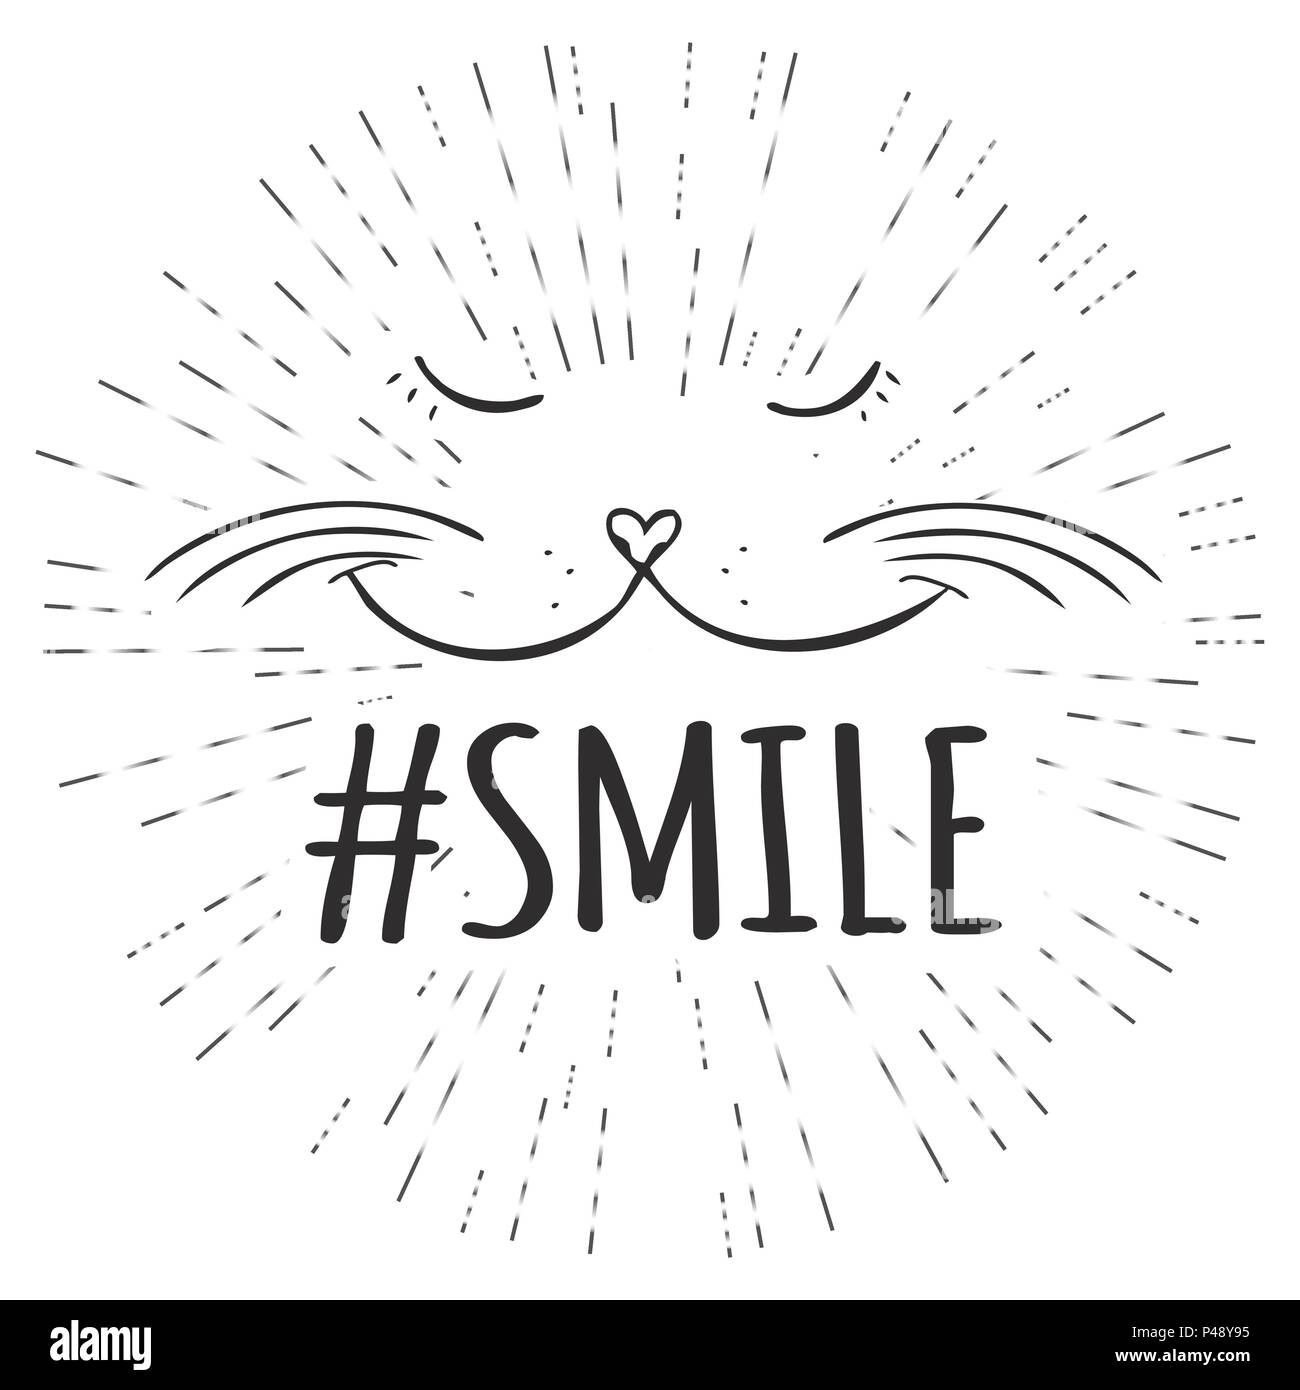 Smiling cat beluga | Poster